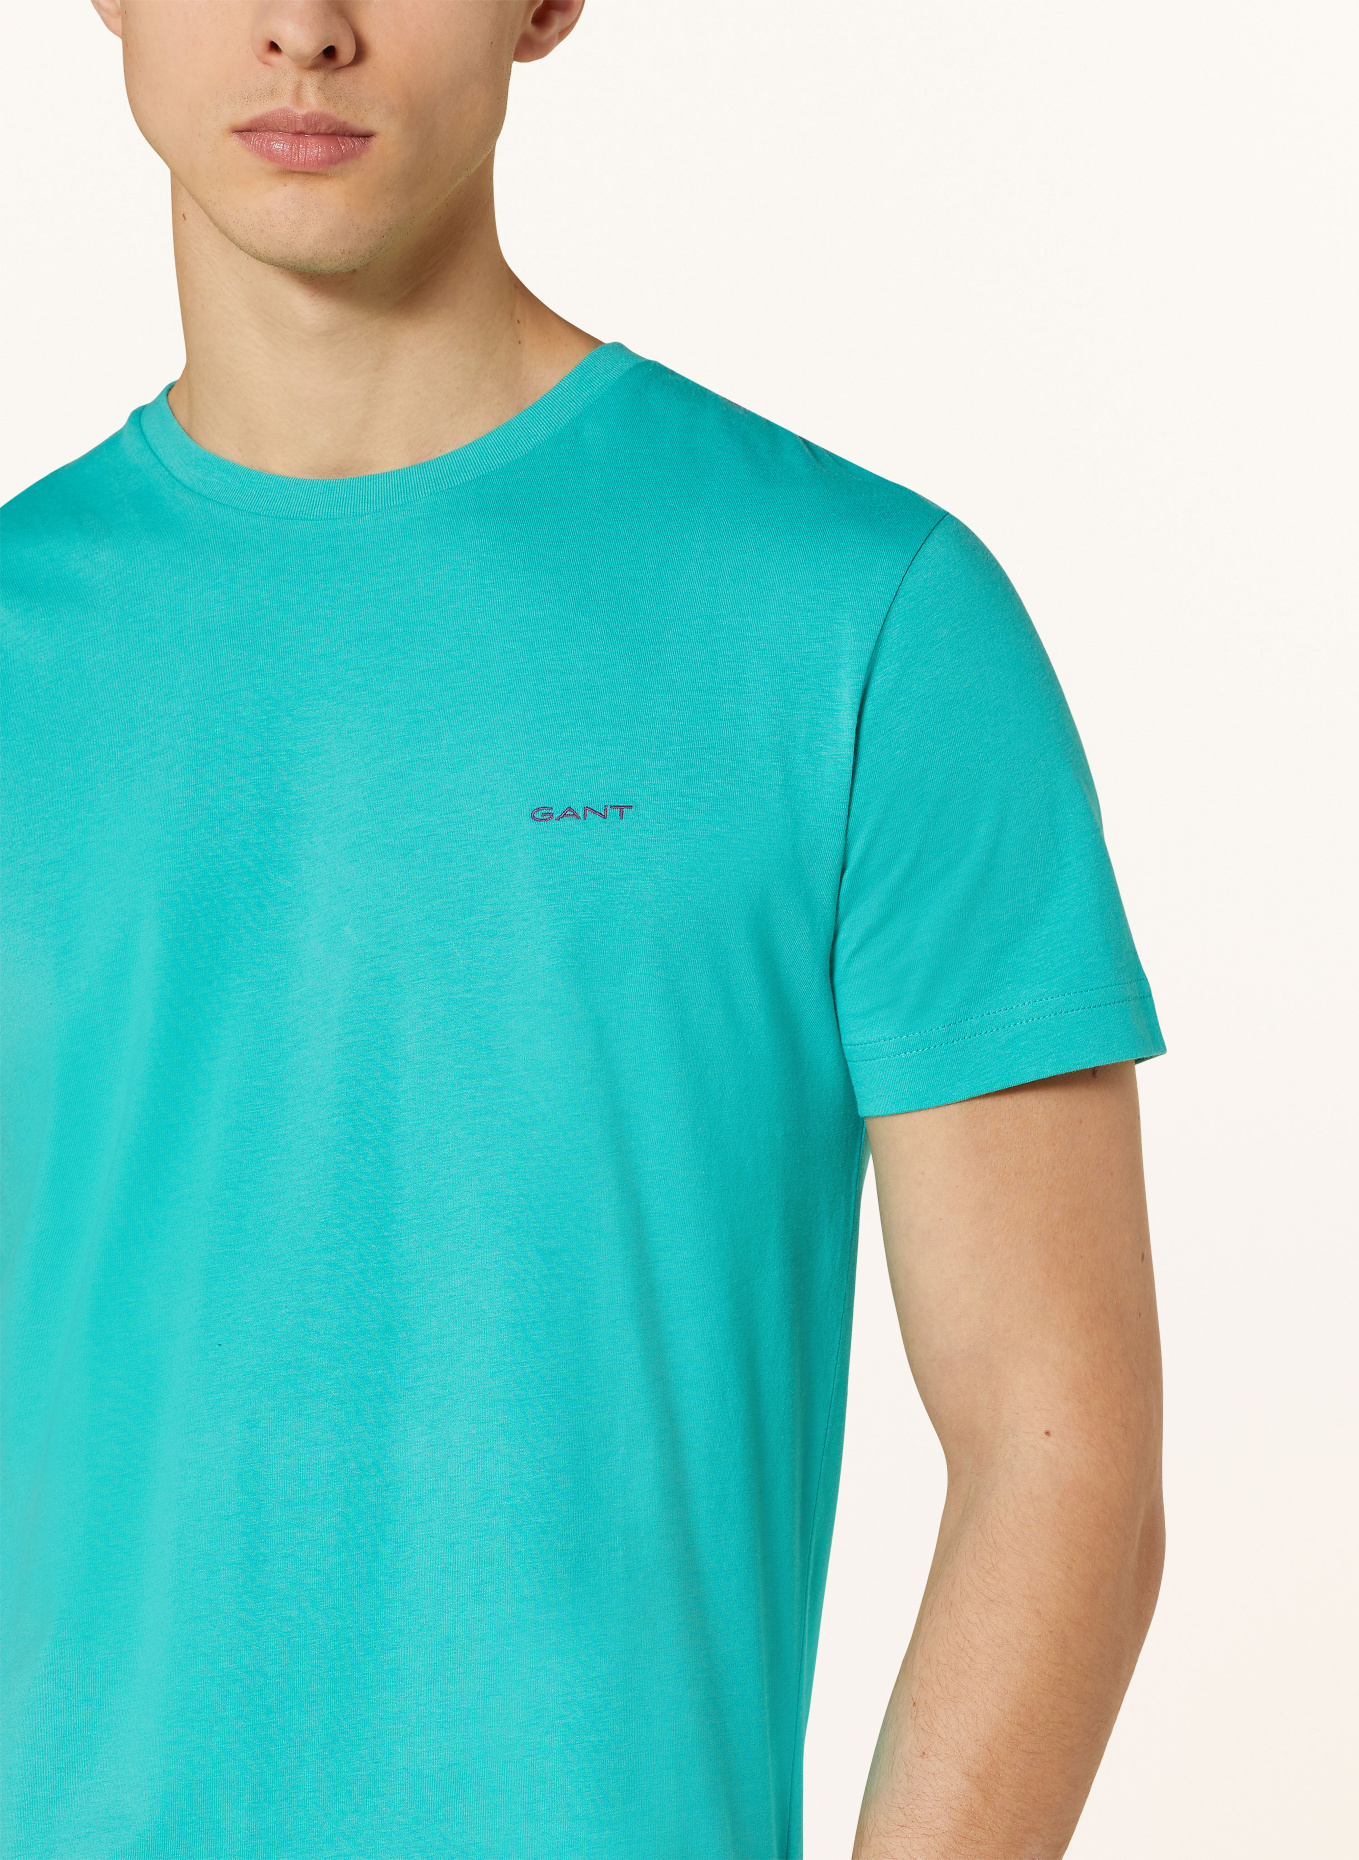 GANT T-shirt, Color: MINT (Image 4)